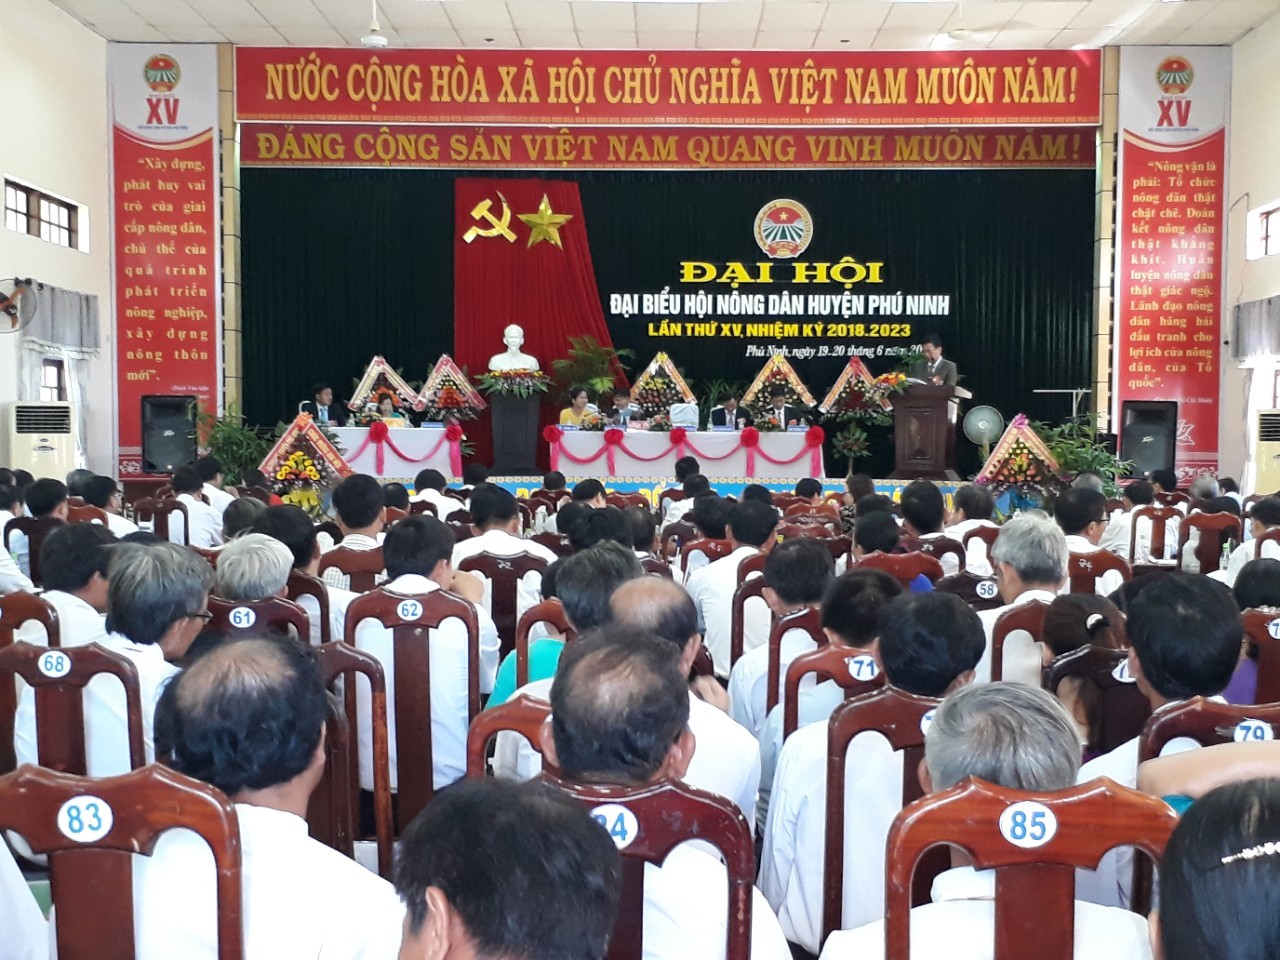 Quảng cảnh Đại hội đại biểu Hội Nông dân huyện Phú Ninh lần thứ XV, nhiệm kỳ 2018-2023